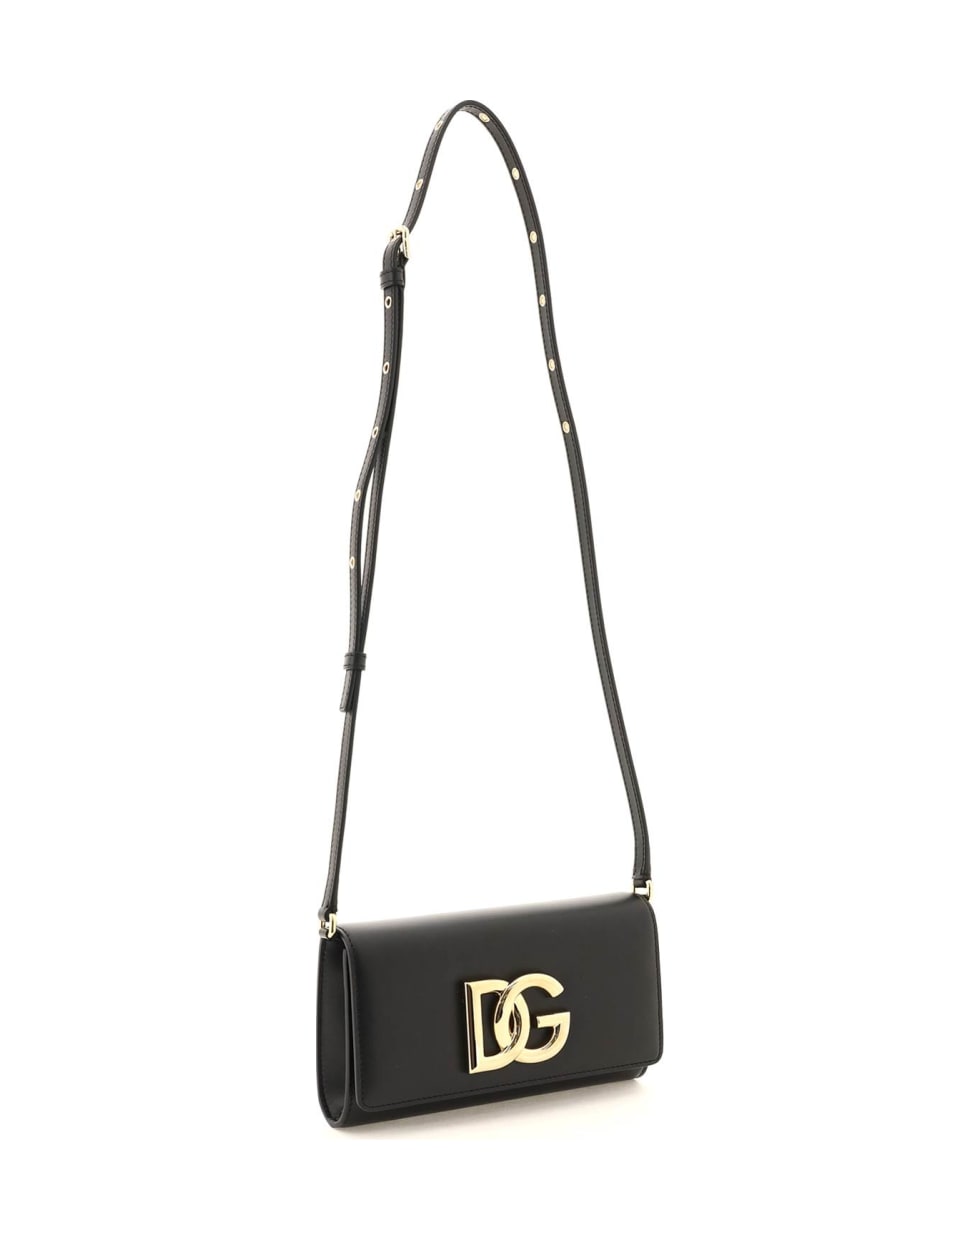 Dolce & Gabbana Leather Clutch With Logo - NERO (Black)